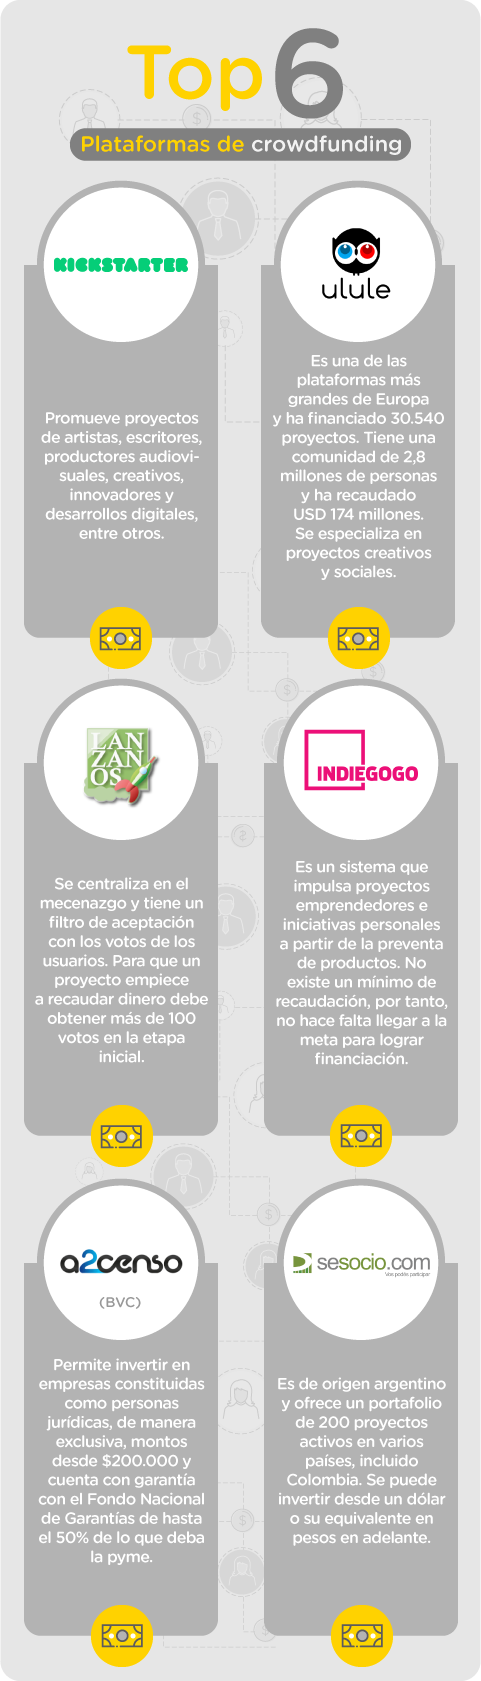 Estas son las seis plataformas más conocidas de crowdfunding: KickStarter, Ulule, Lánzanos, Indiegogo, A2censo y Sesocio.